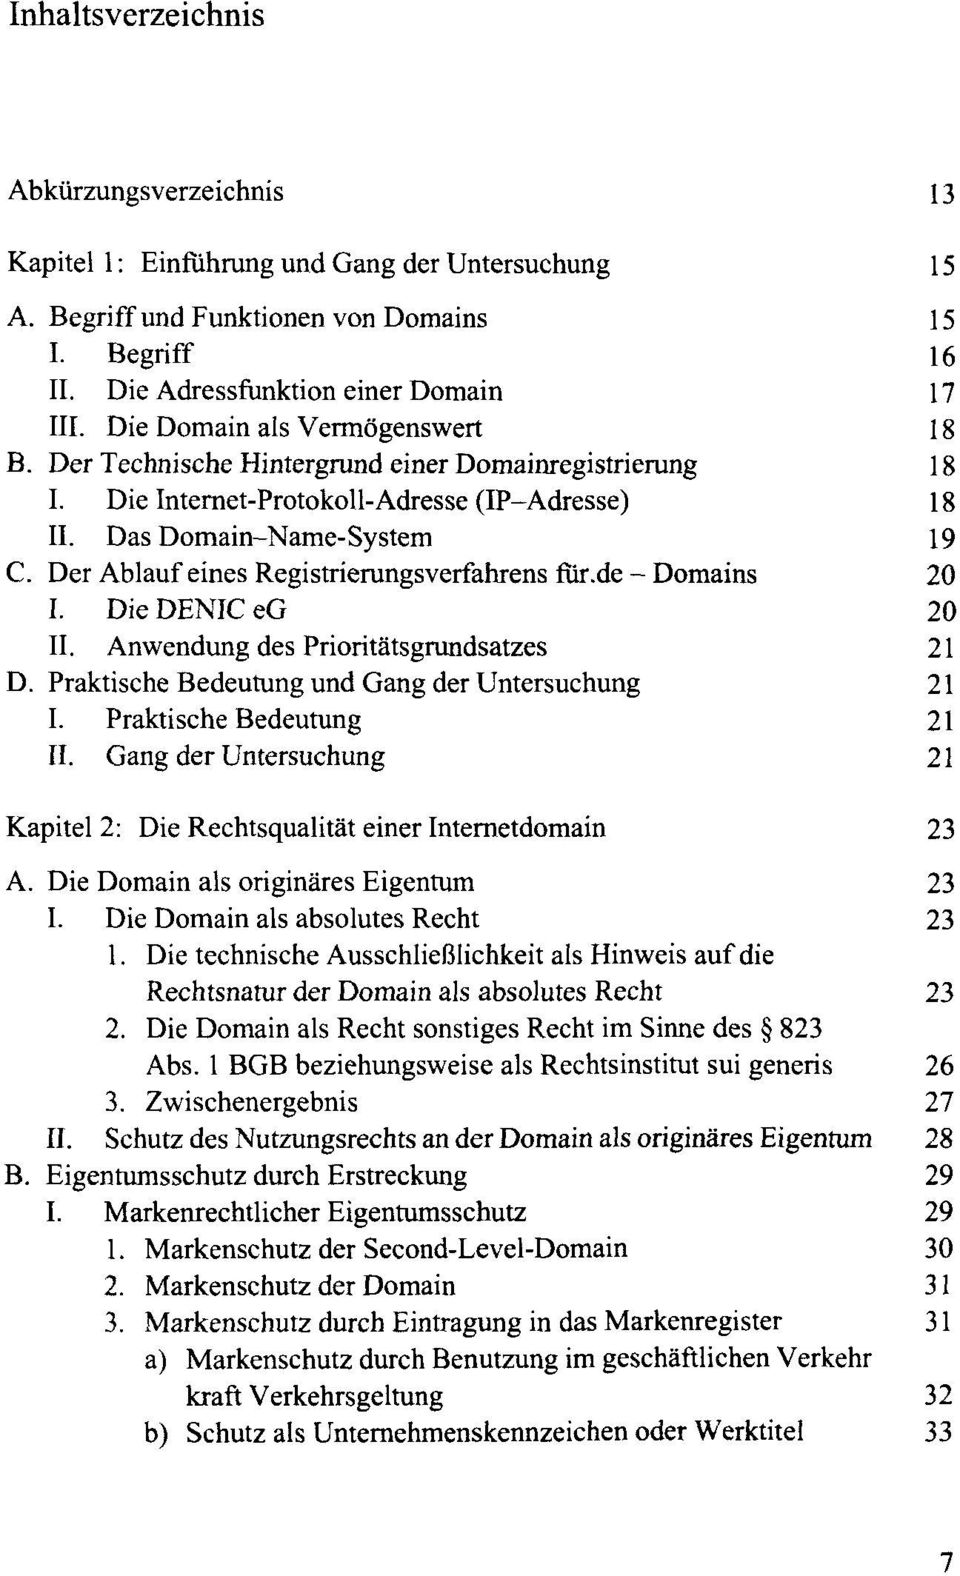 Der Ablauf eines Registrierungsverfahrens für.de-domains 20 I. Die DENIC eg 20 II. Anwendung des Prioritätsgrundsatzes 21 D. Praktische Bedeutung und Gang der Untersuchung 21 I.